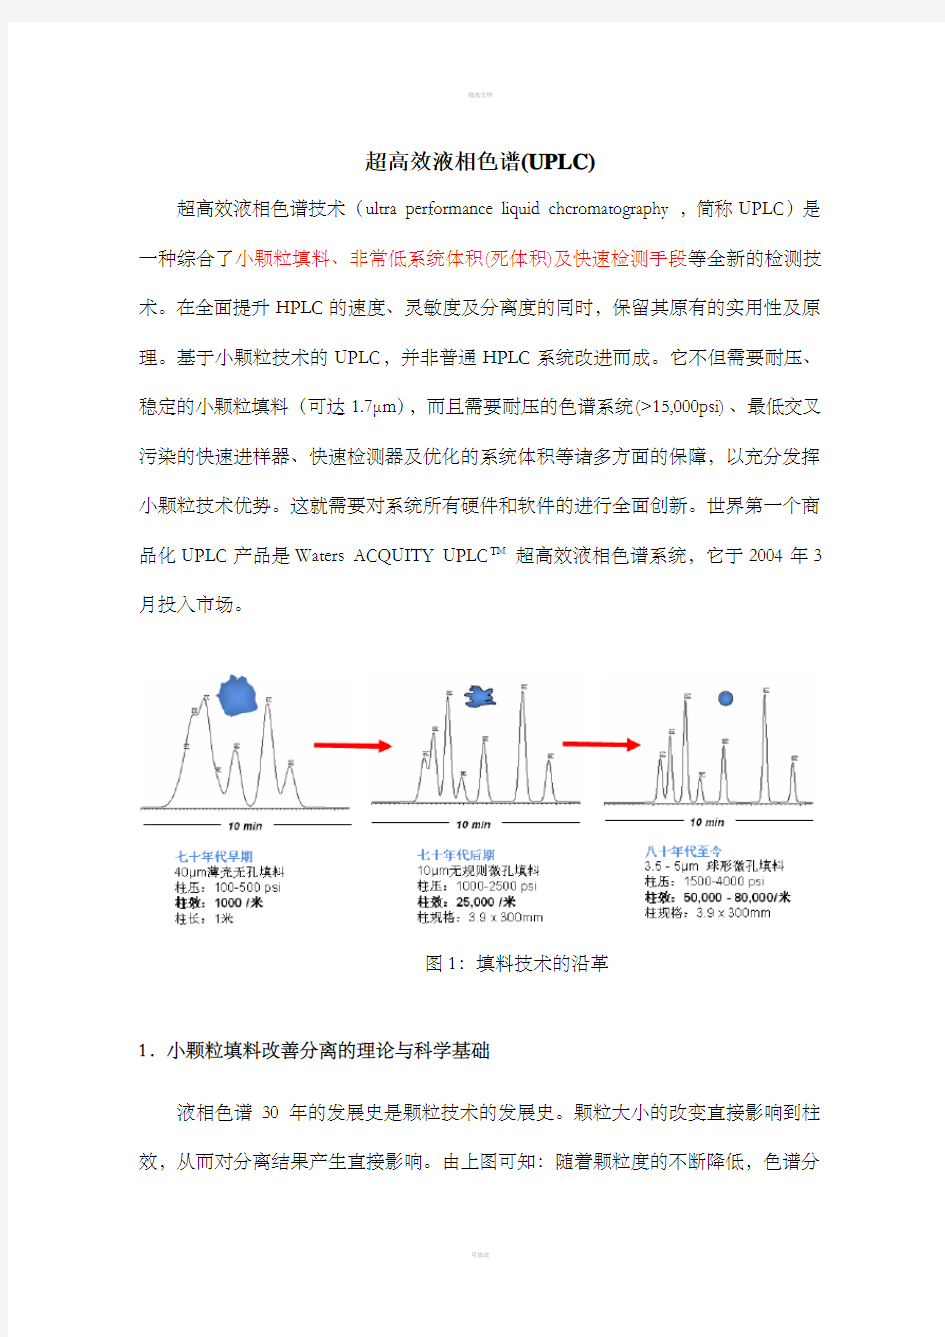 色谱分析(中国药科大学)超高效液相色谱(UPLC)